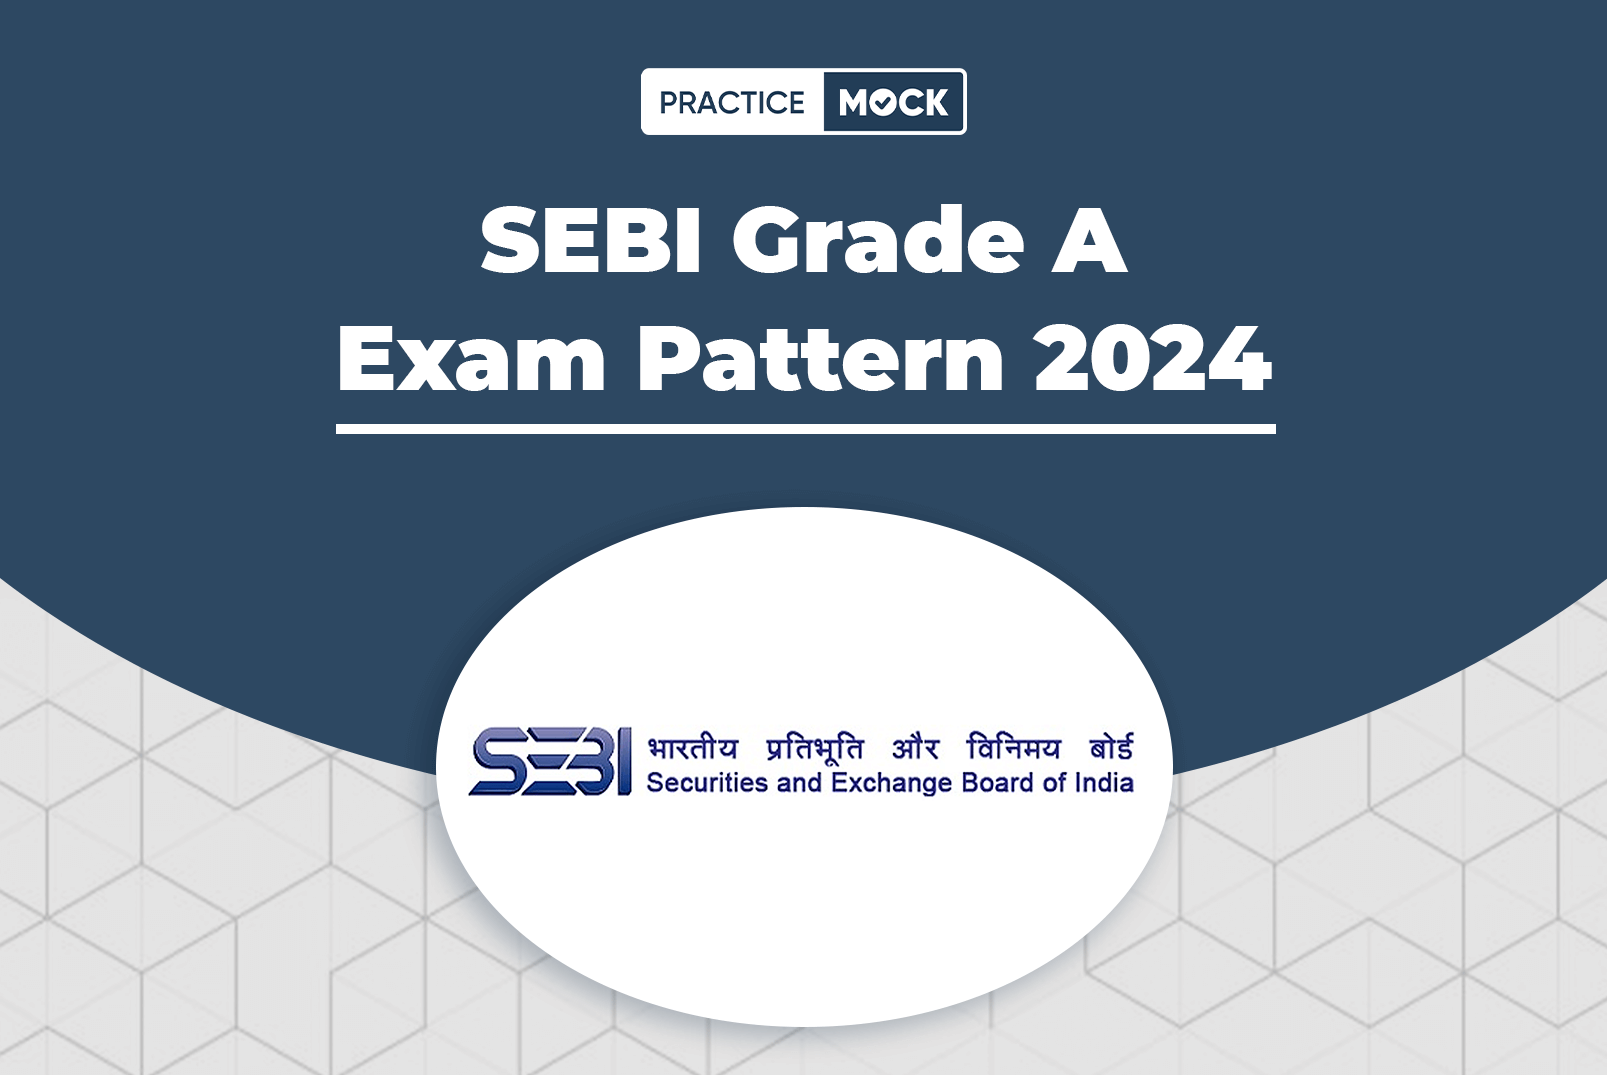 SEBI Grade A Exam Pattern 2024